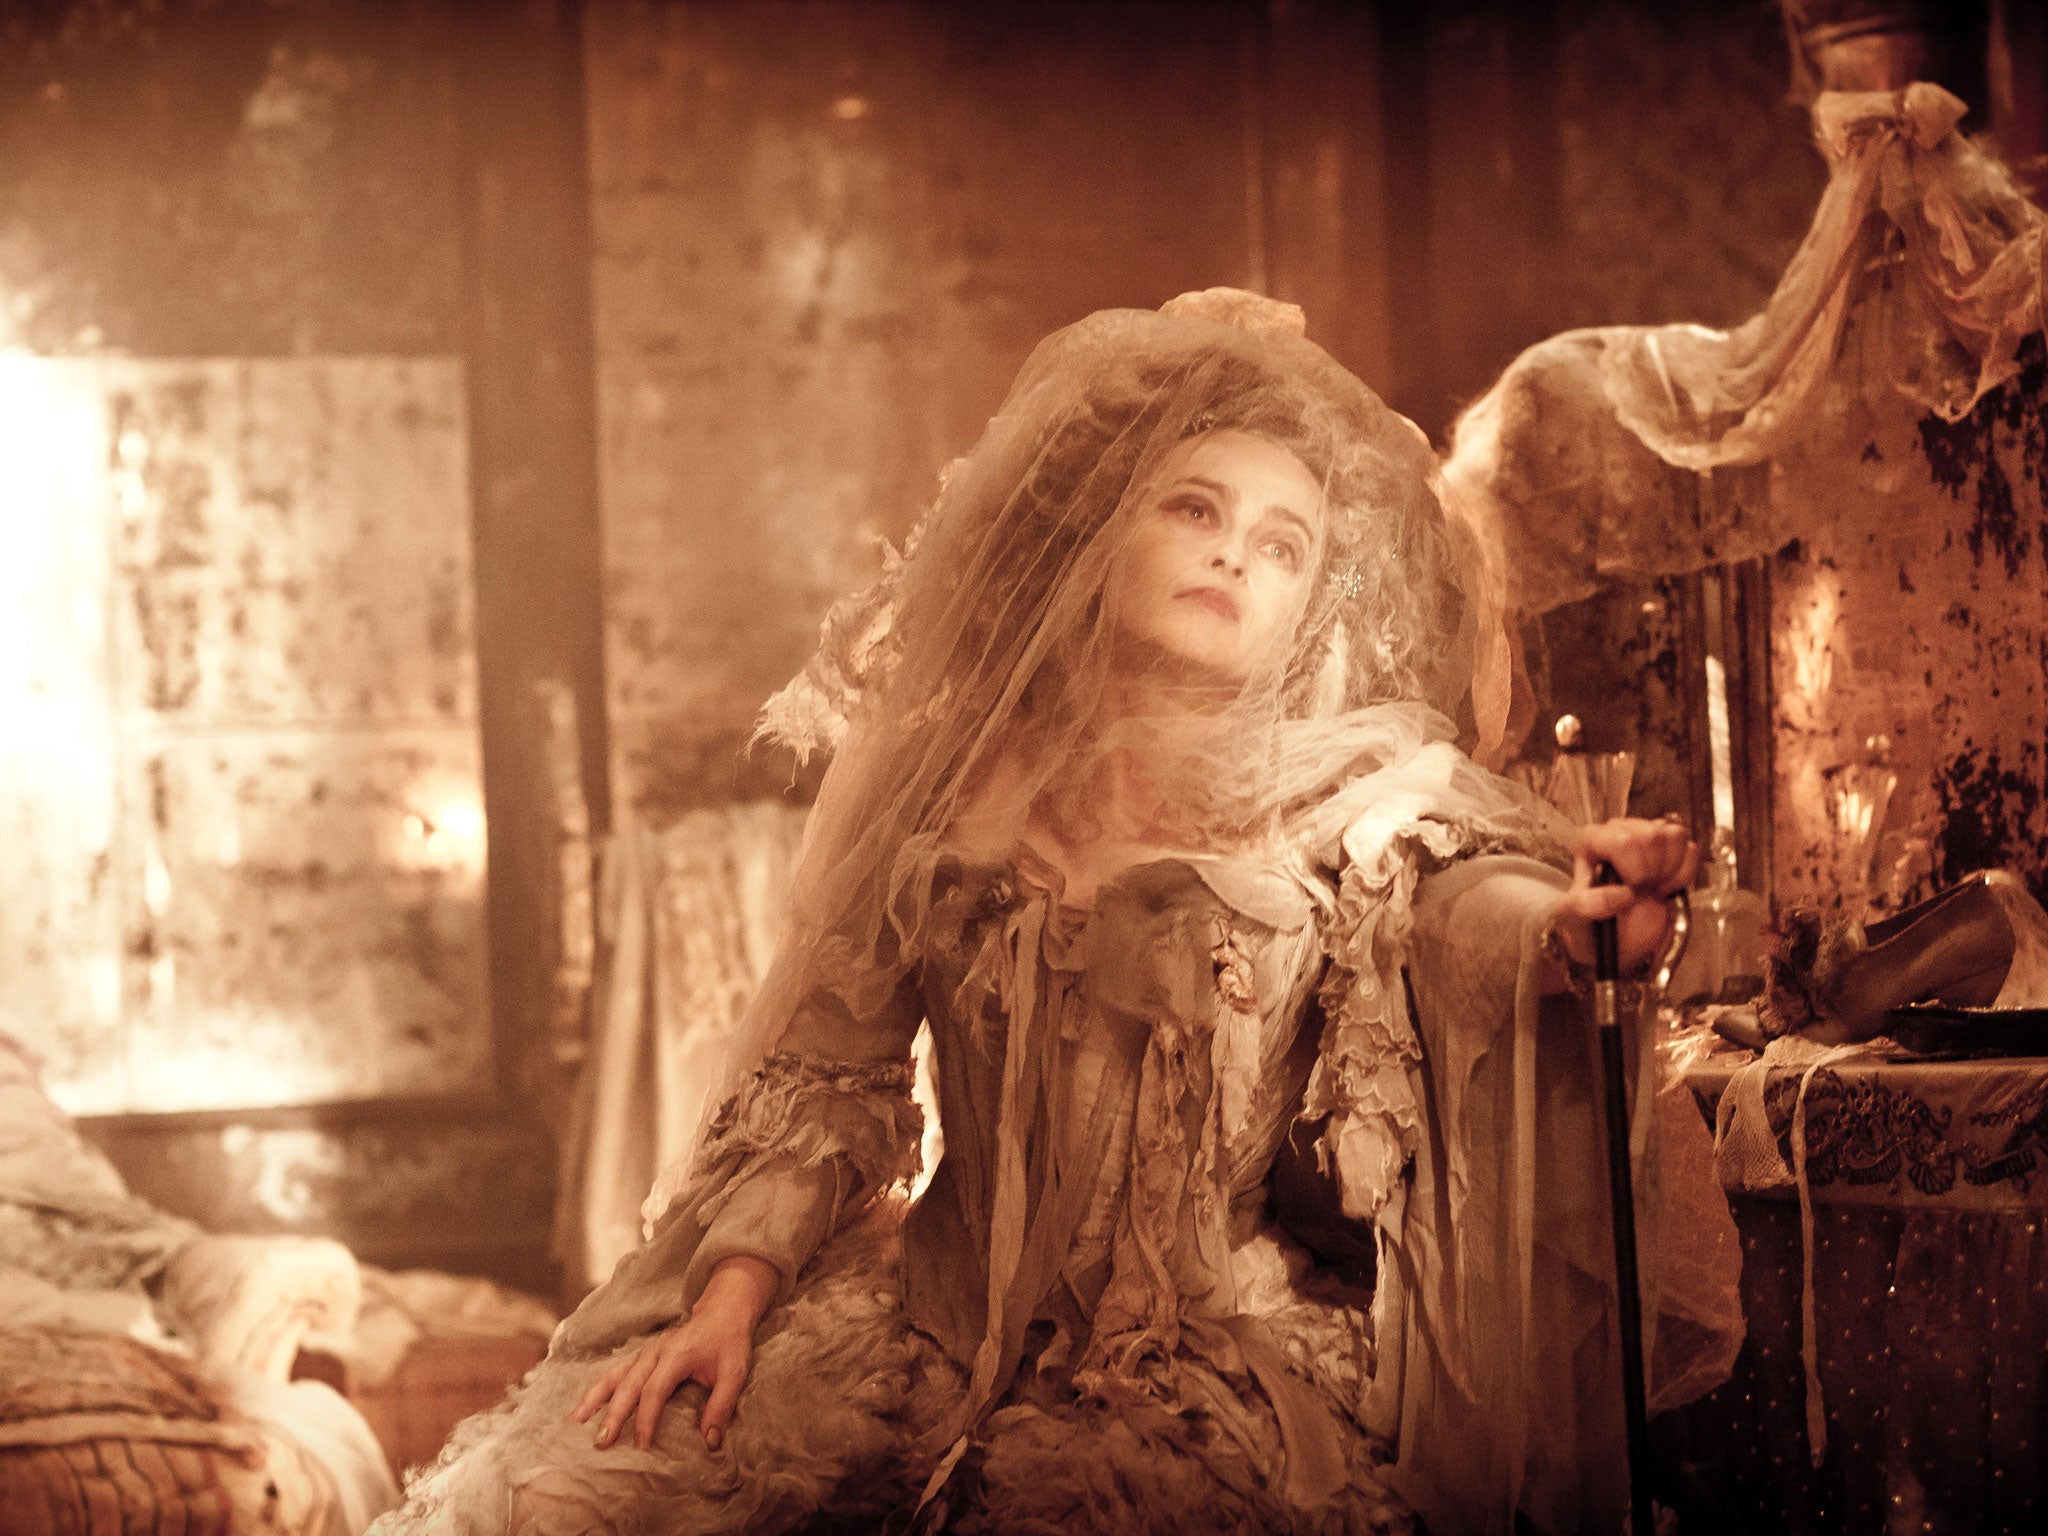 Expectations met: Helena Bonham Carter as Miss Havisham